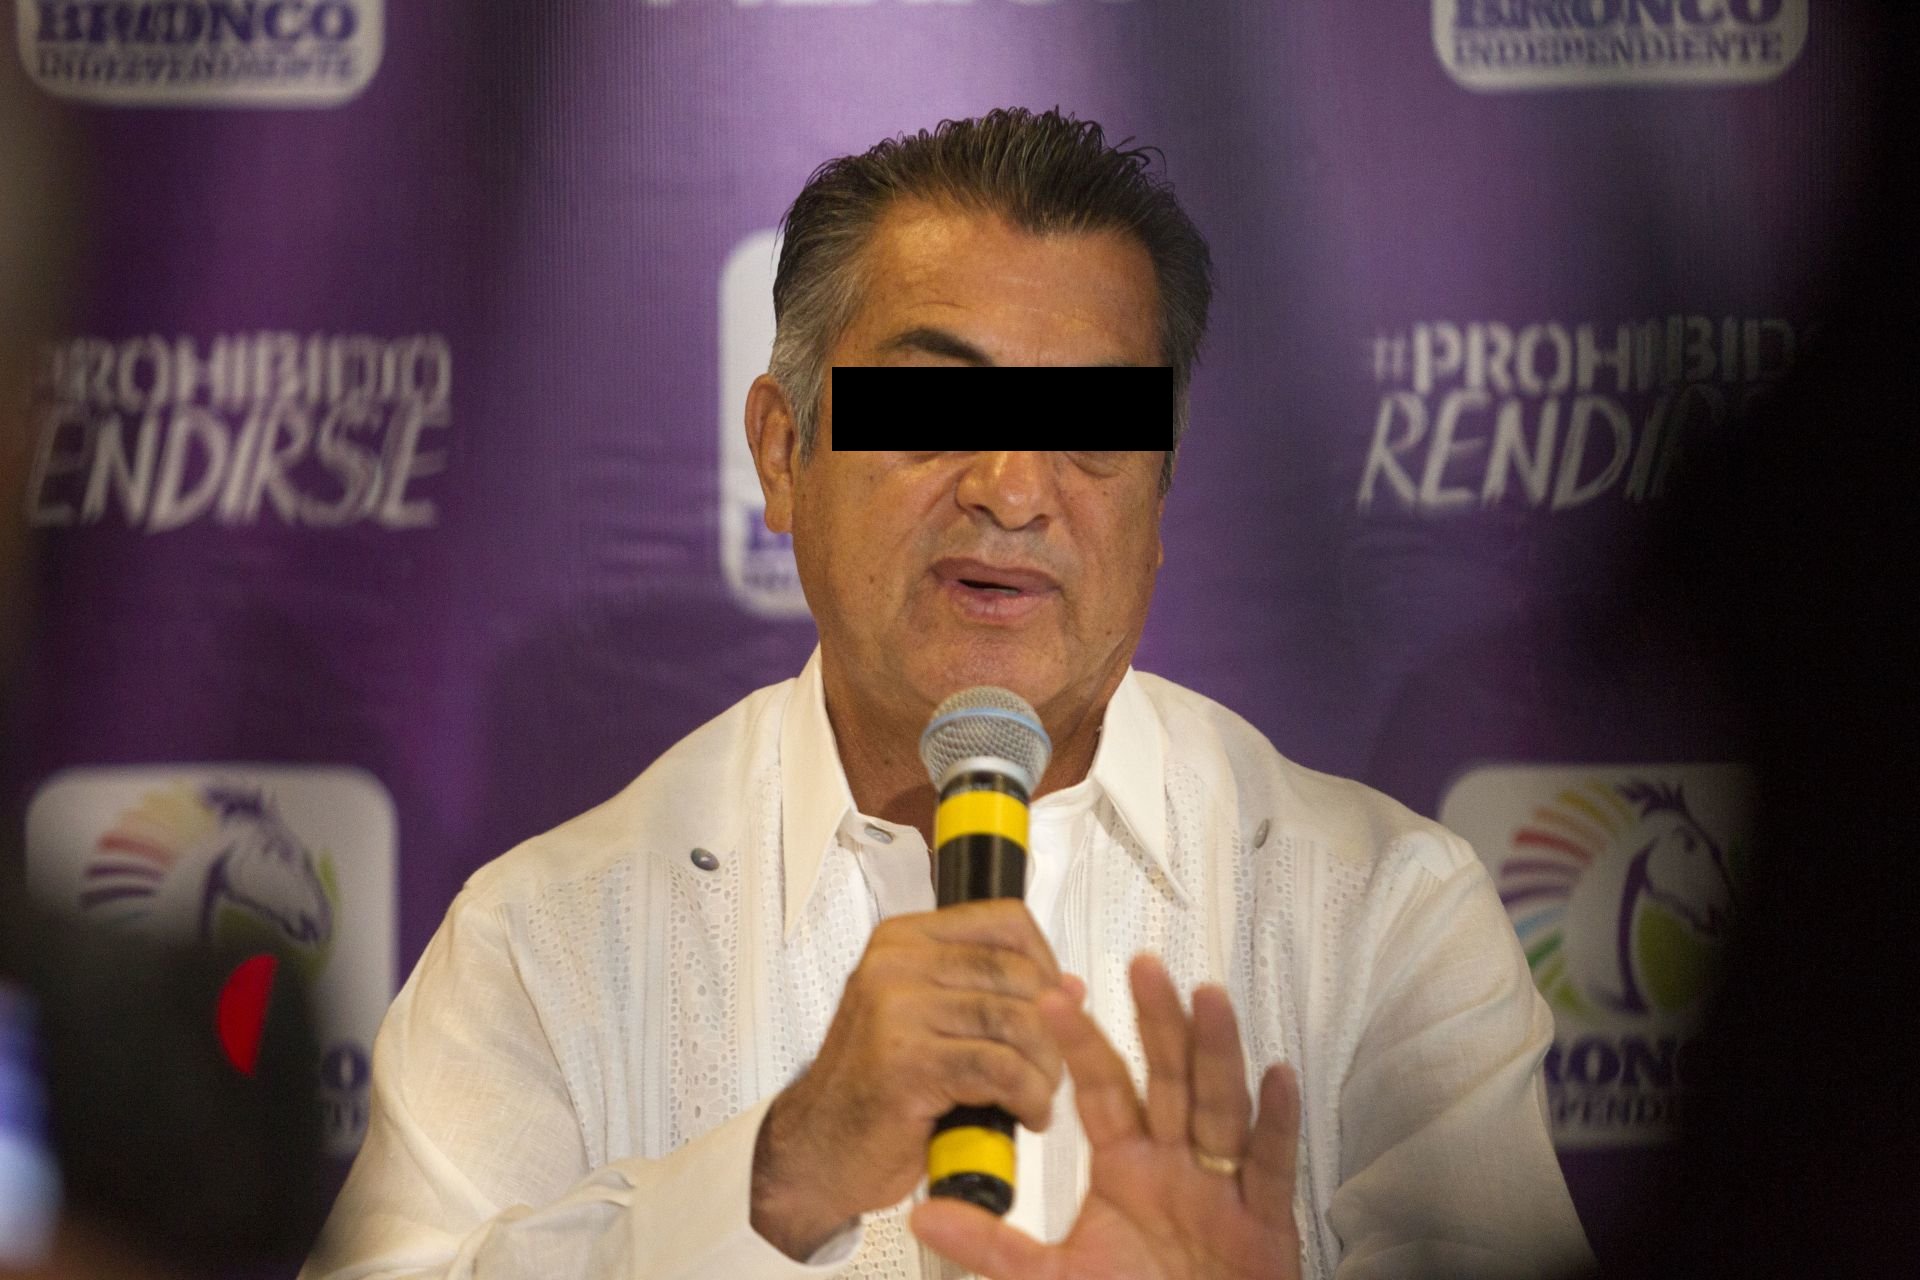 Jaime Rodríguez "El Bronco" será operado de emergencia, luego de le fueron detectados dos tumores. FOTO: GABRIELA PÉREZ MONTIEL /CUARTOSCURO.COM